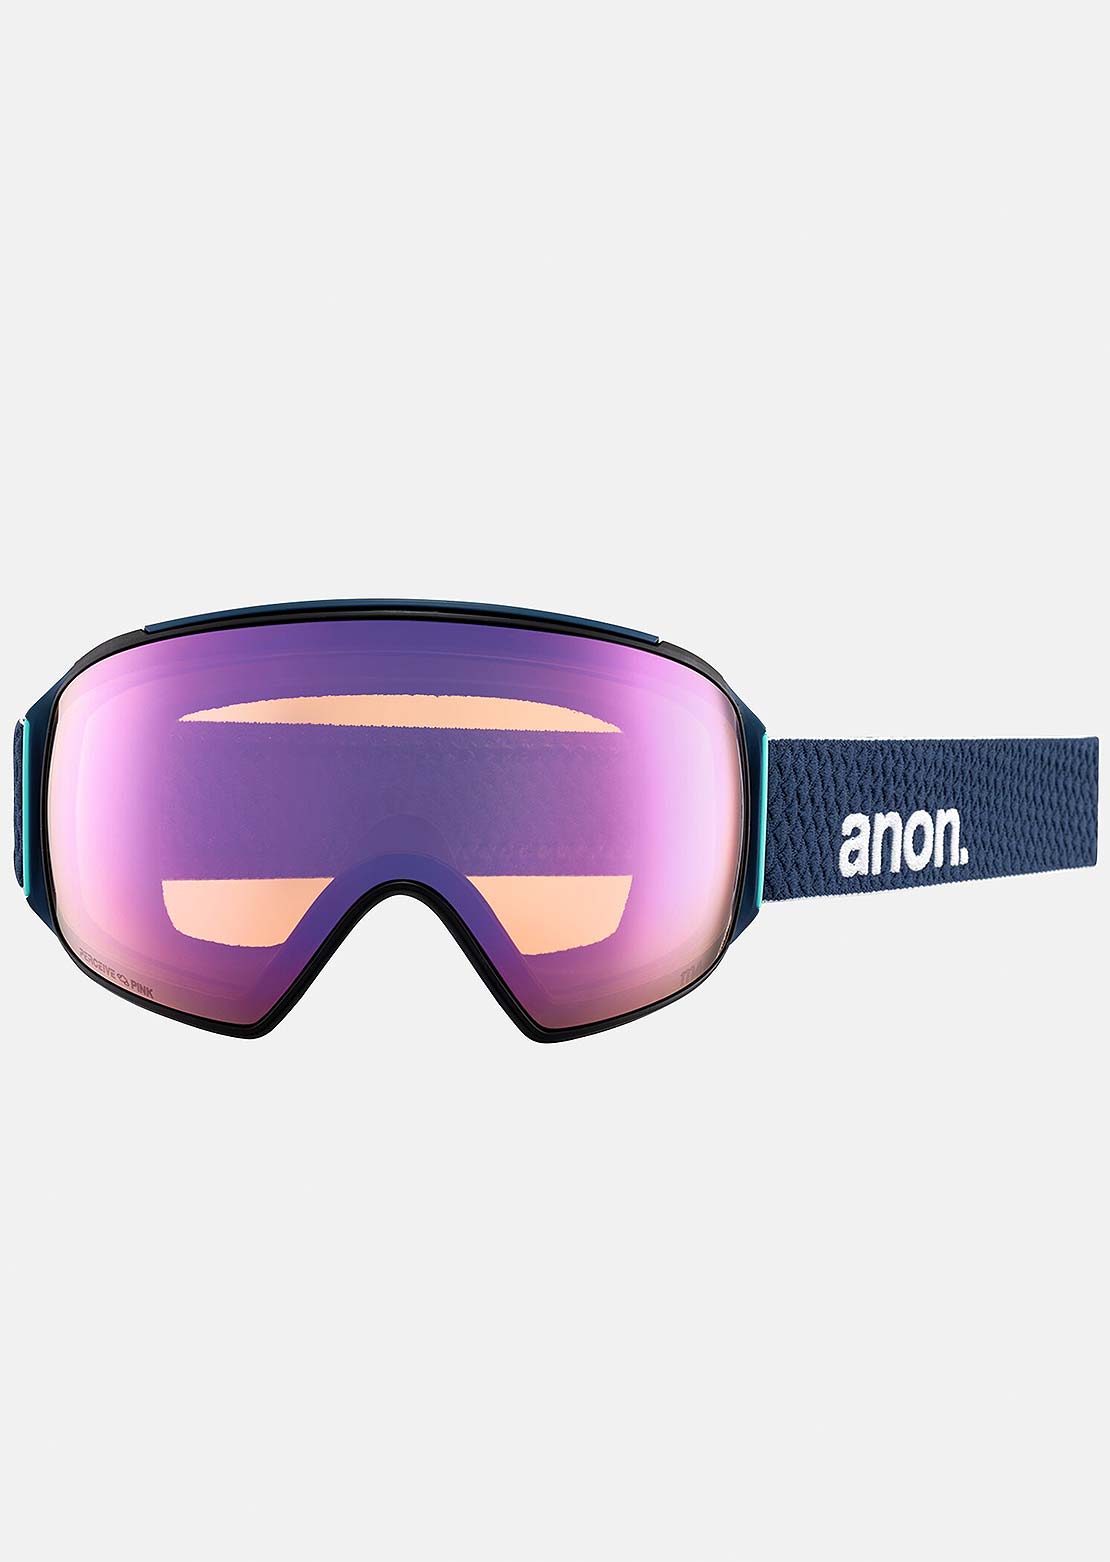 Anon Men&#39;s M4 Toric Goggles + Bonus Lens + MFI Face Mask Nightfall/Perceive Variable Blue